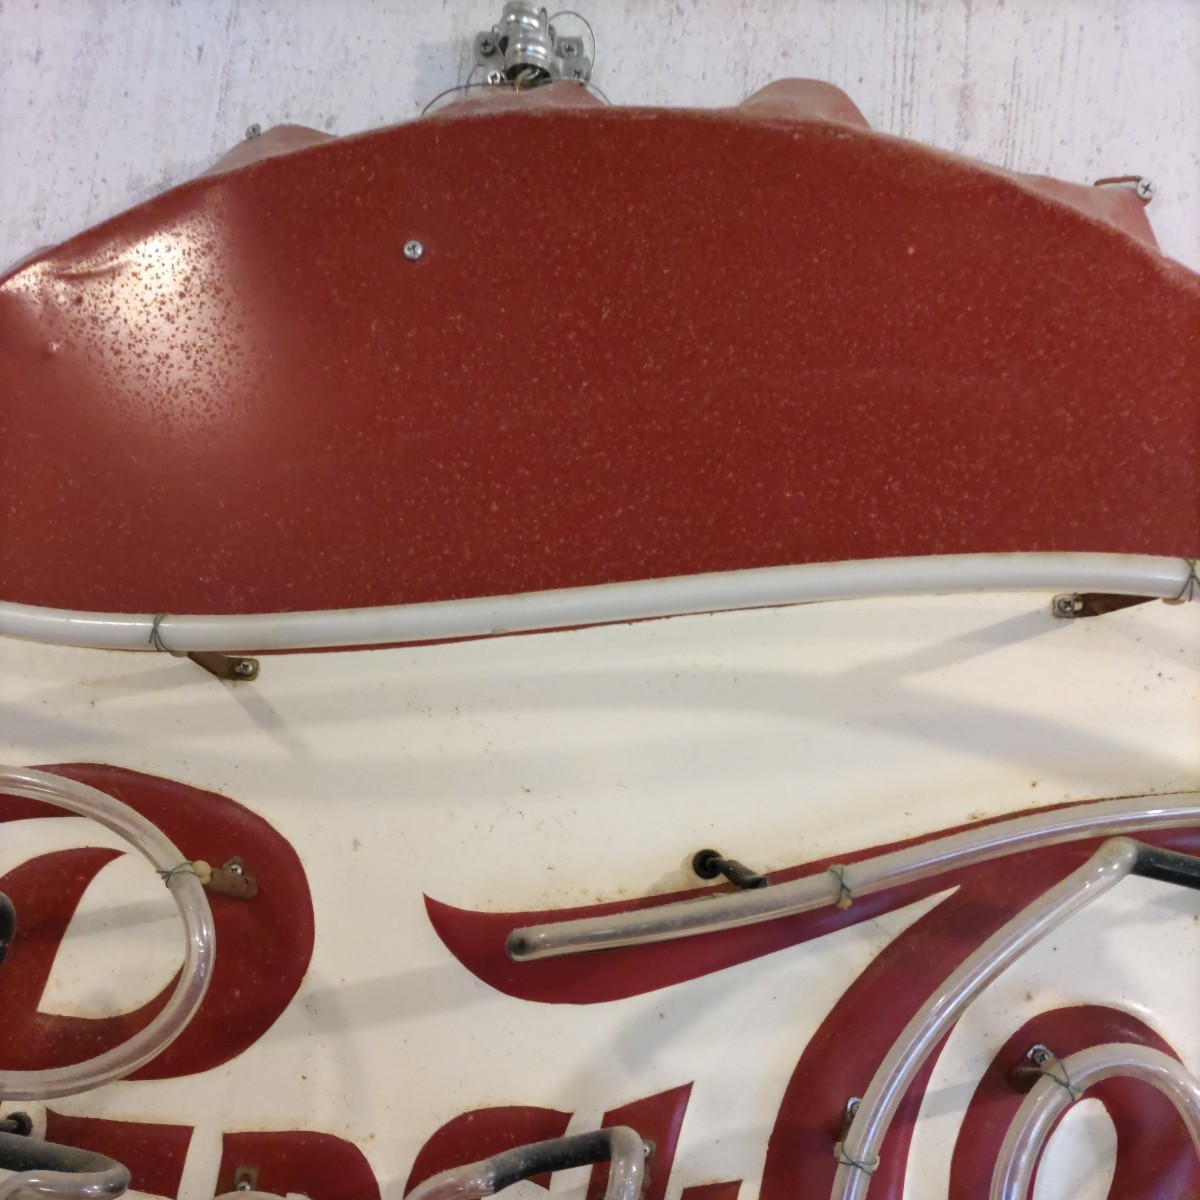  Vintage 1950s PEPSI-COLA Pepsi-Cola USA магазин для очень большой neon автограф диаметр 92cm табличка [ самовывоз ограничение ]